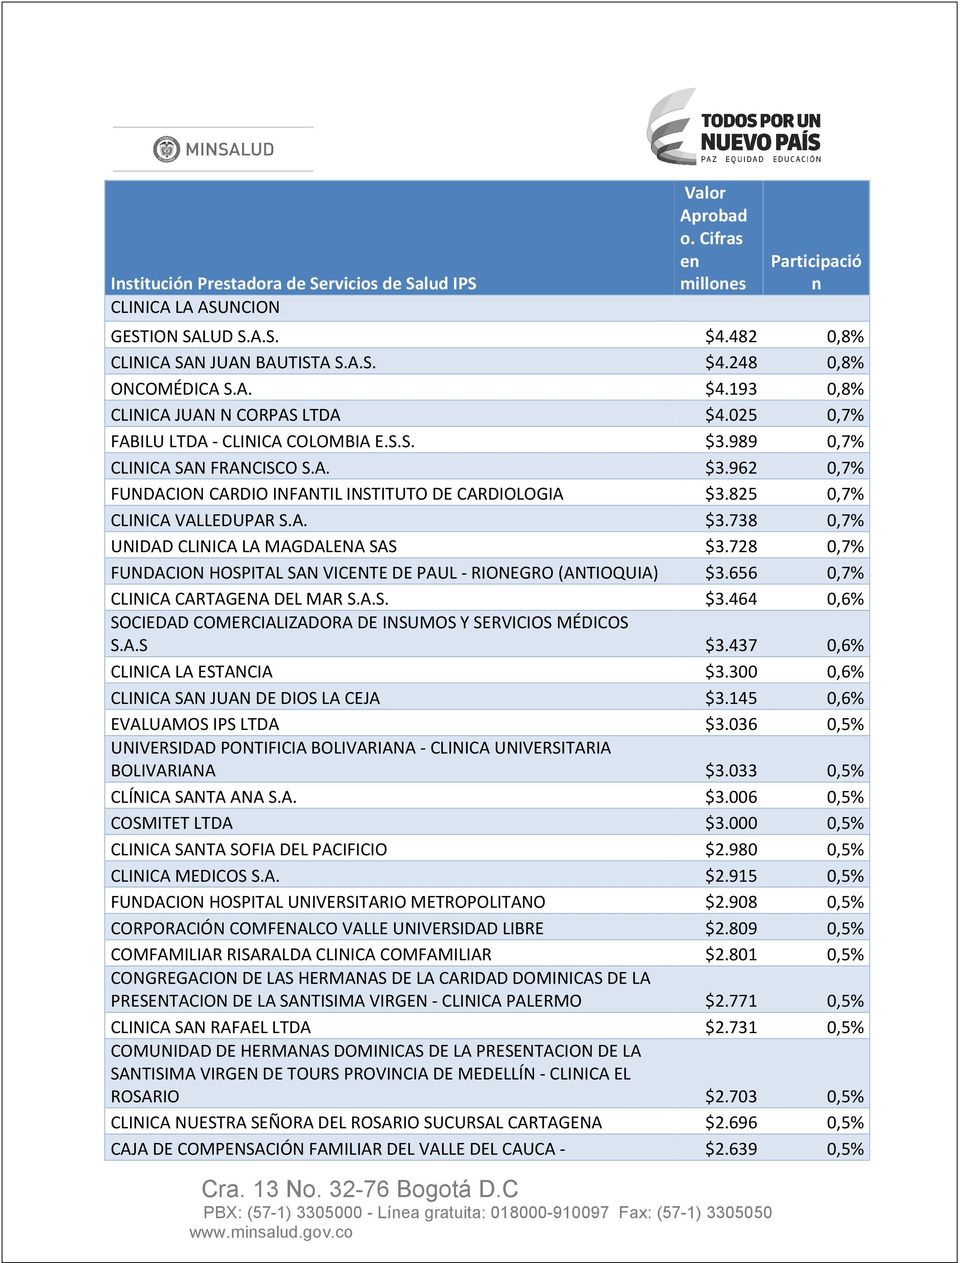 728 0,7% FUNDACION HOSPITAL SAN VICENTE DE PAUL - RIONEGRO (ANTIOQUIA) $3.656 0,7% CLINICA CARTAGENA DEL MAR S.A.S. $3.464 0,6% SOCIEDAD COMERCIALIZADORA DE INSUMOS Y SERVICIOS MÉDICOS S.A.S $3.